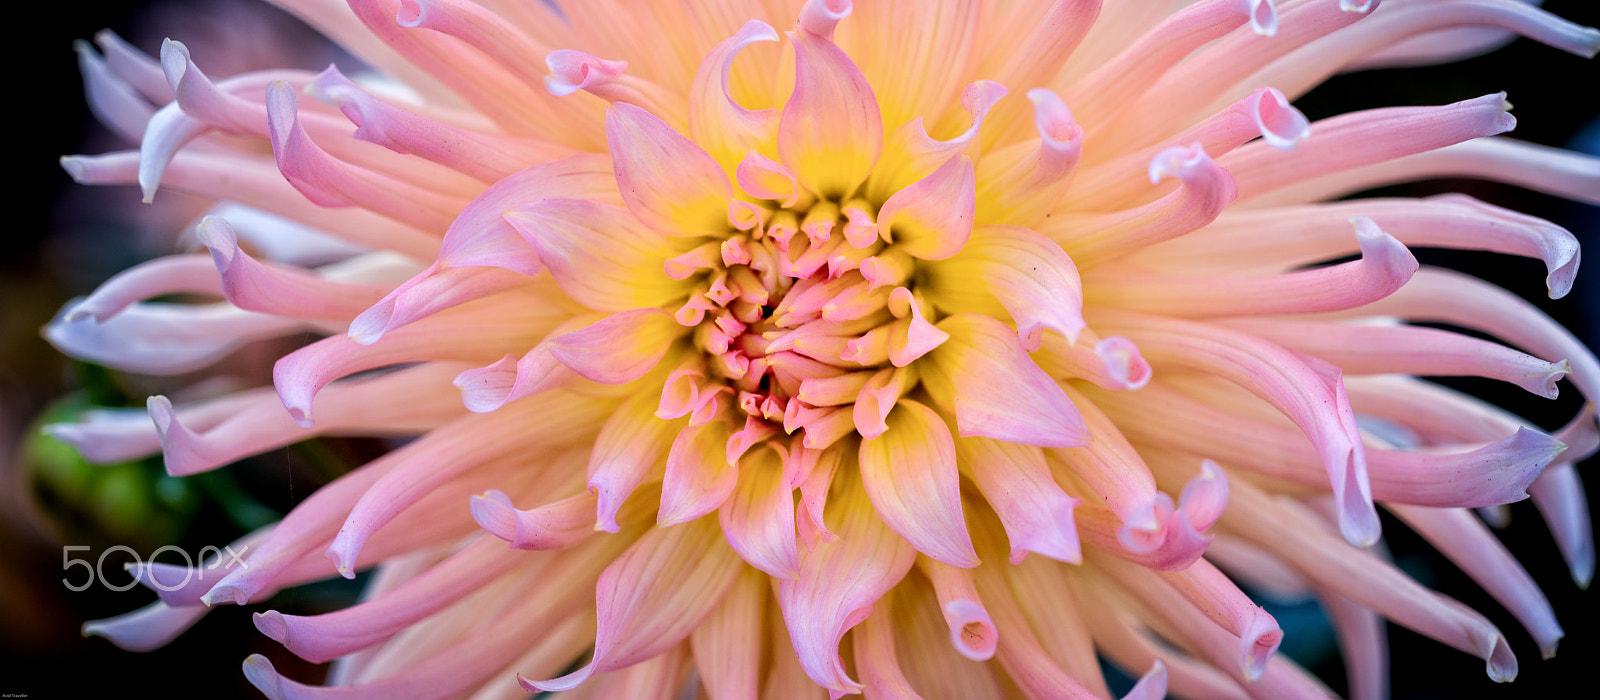 Nikon D810 sample photo. Dahlia cactus pink photography